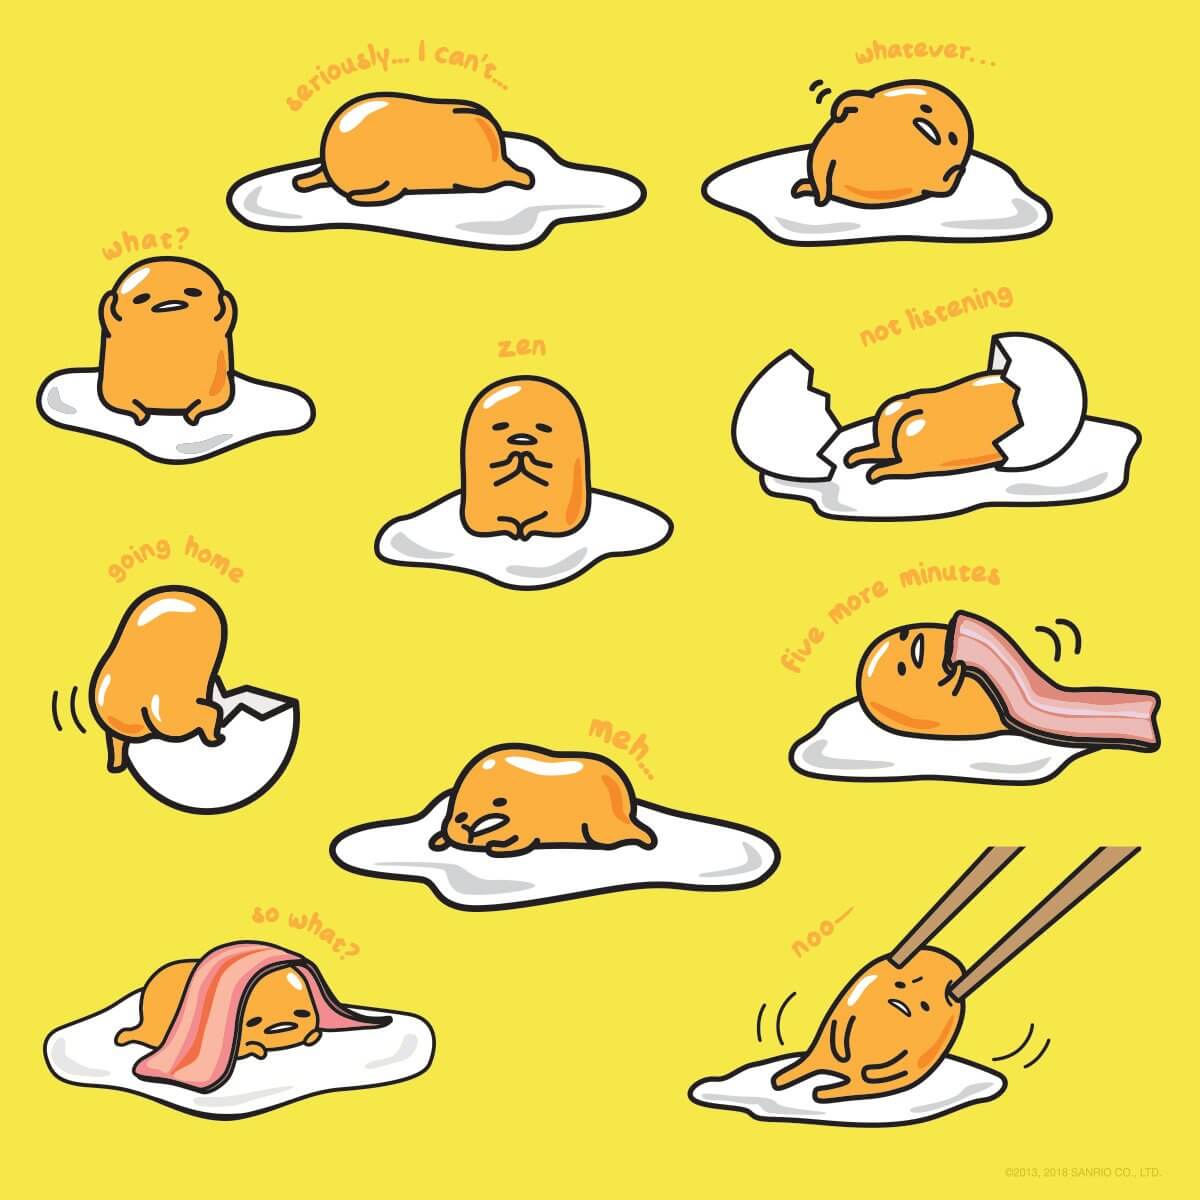 GK-O Anime Gudetama Plush Blanket Yellow Lazy Egg Egypt | Ubuy